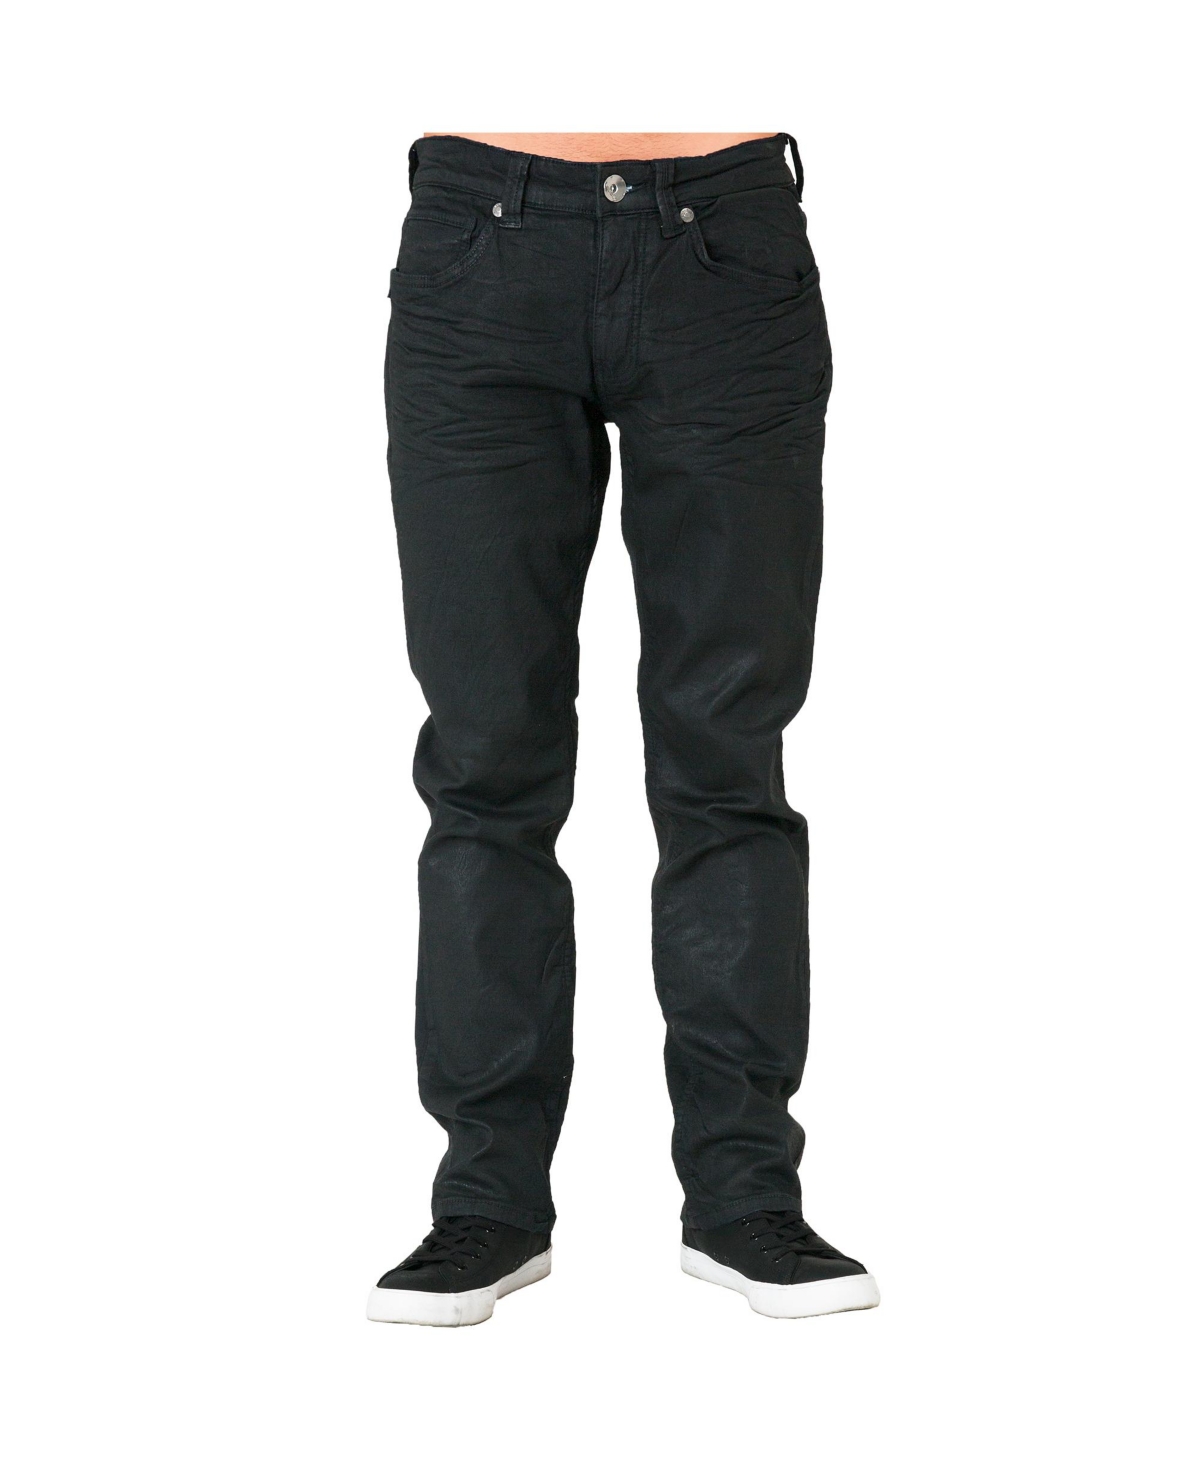 Men's Relaxed Straight Premium Denim Jeans Black Coated - Black